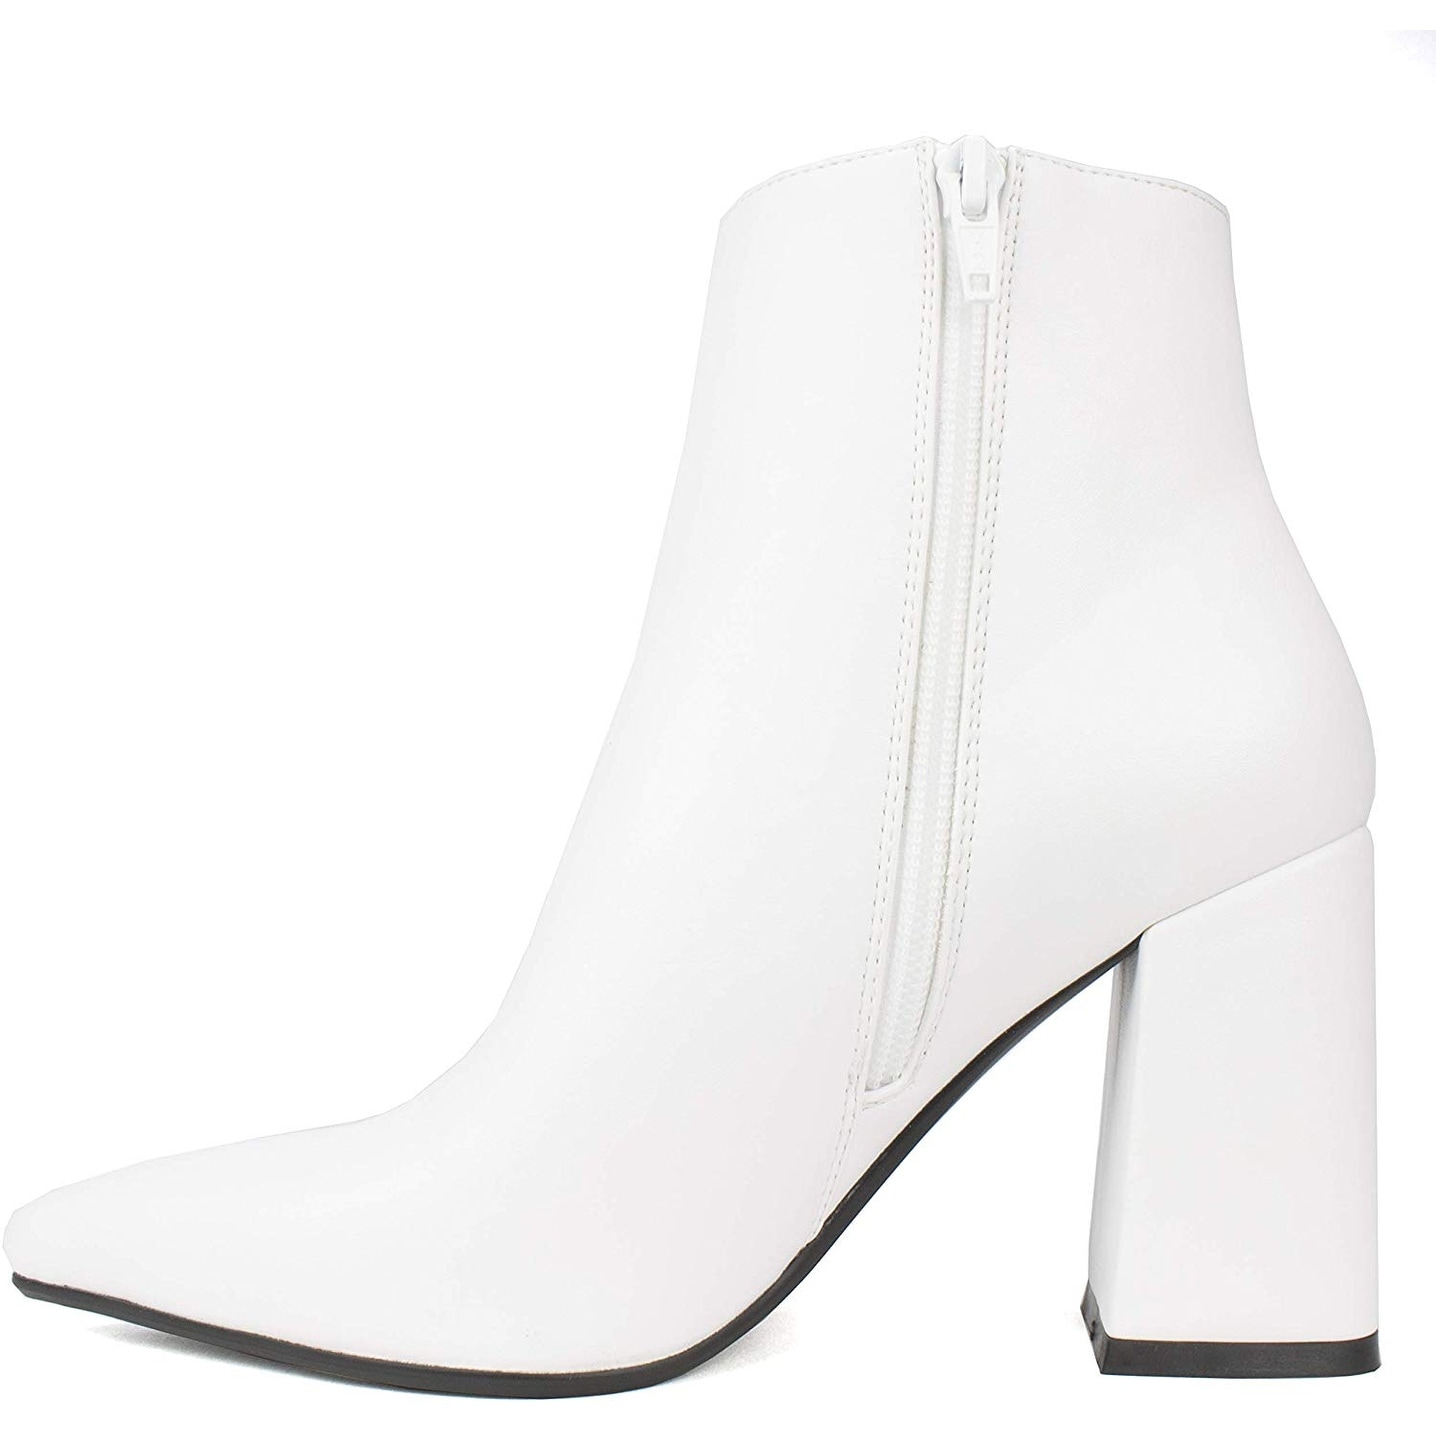 white heels for kids